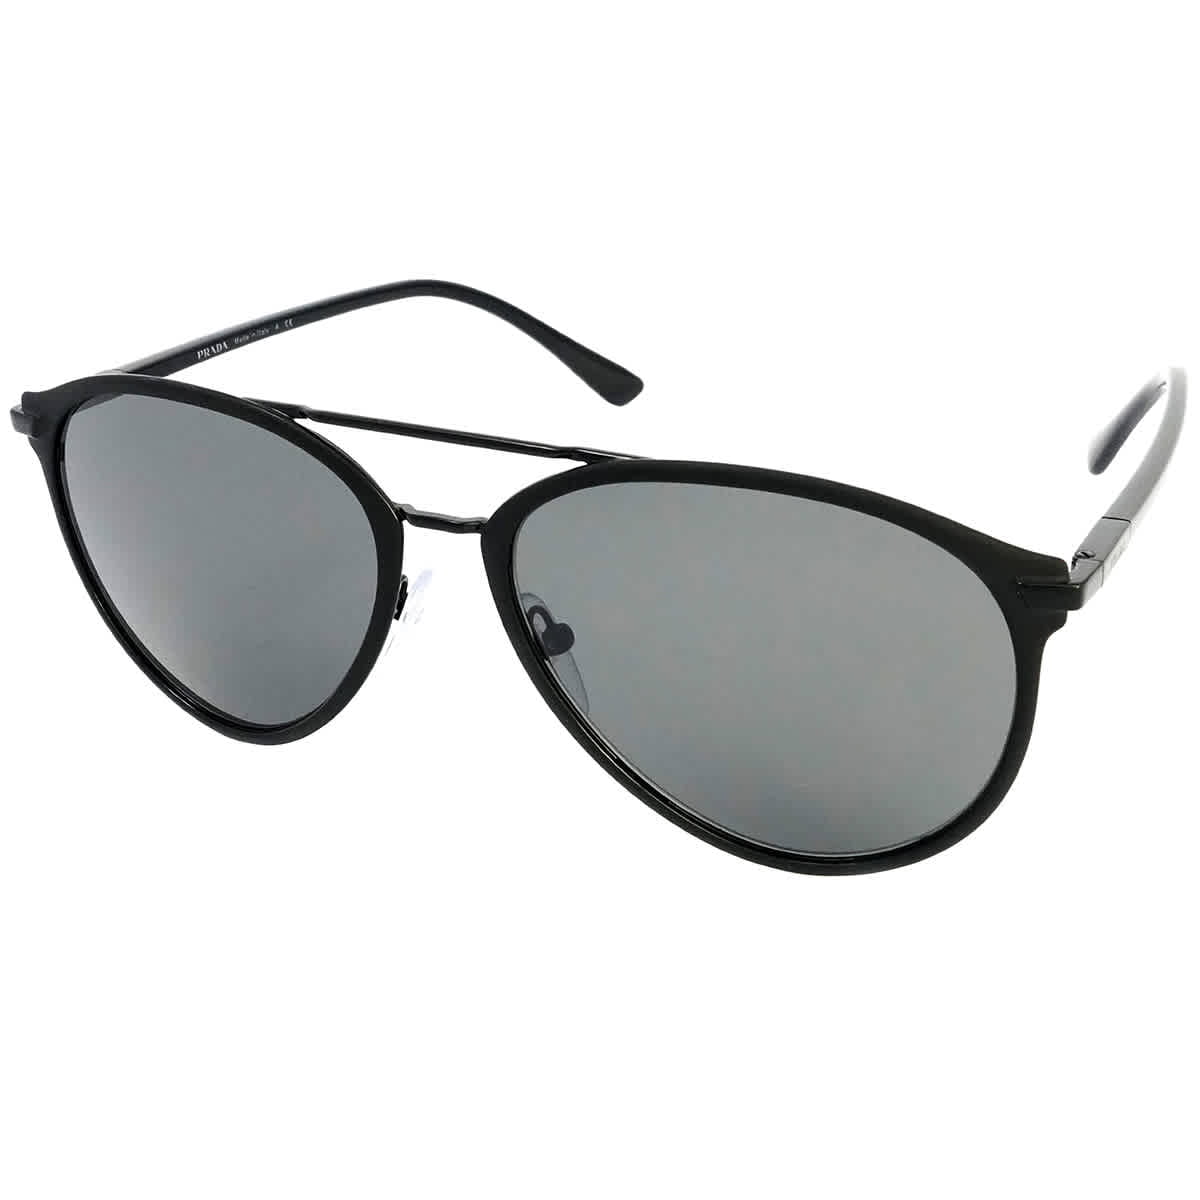 New Prosun Sunglasses S Small Size Gray 